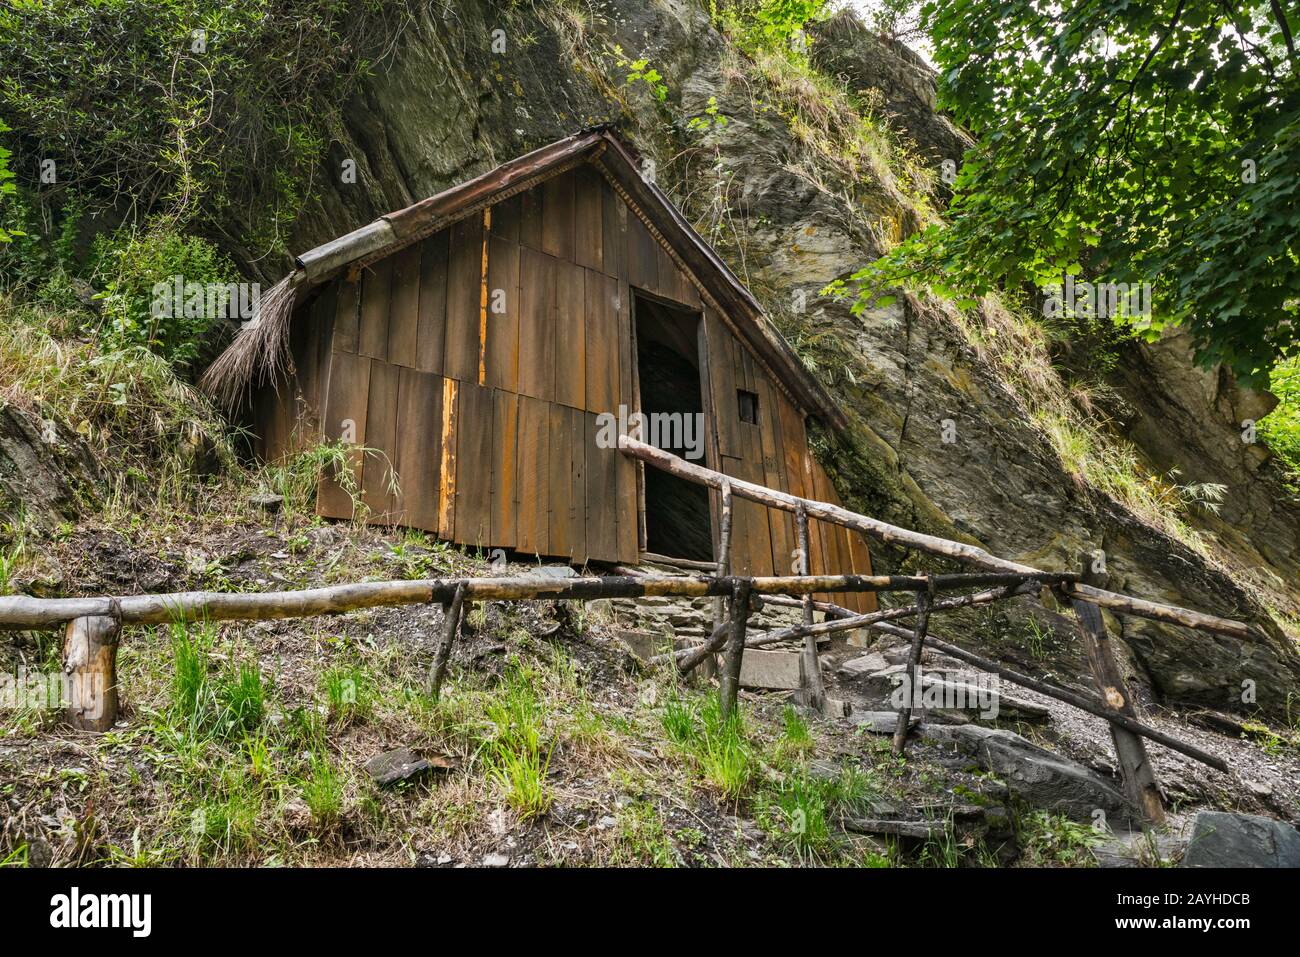 Cabaña del siglo XIX en la aldea de asentamiento chino, construida por inmigrantes chinos, mineros de oro, en Arrowtown, región de Otago, Isla del Sur, Nueva Zelanda Foto de stock